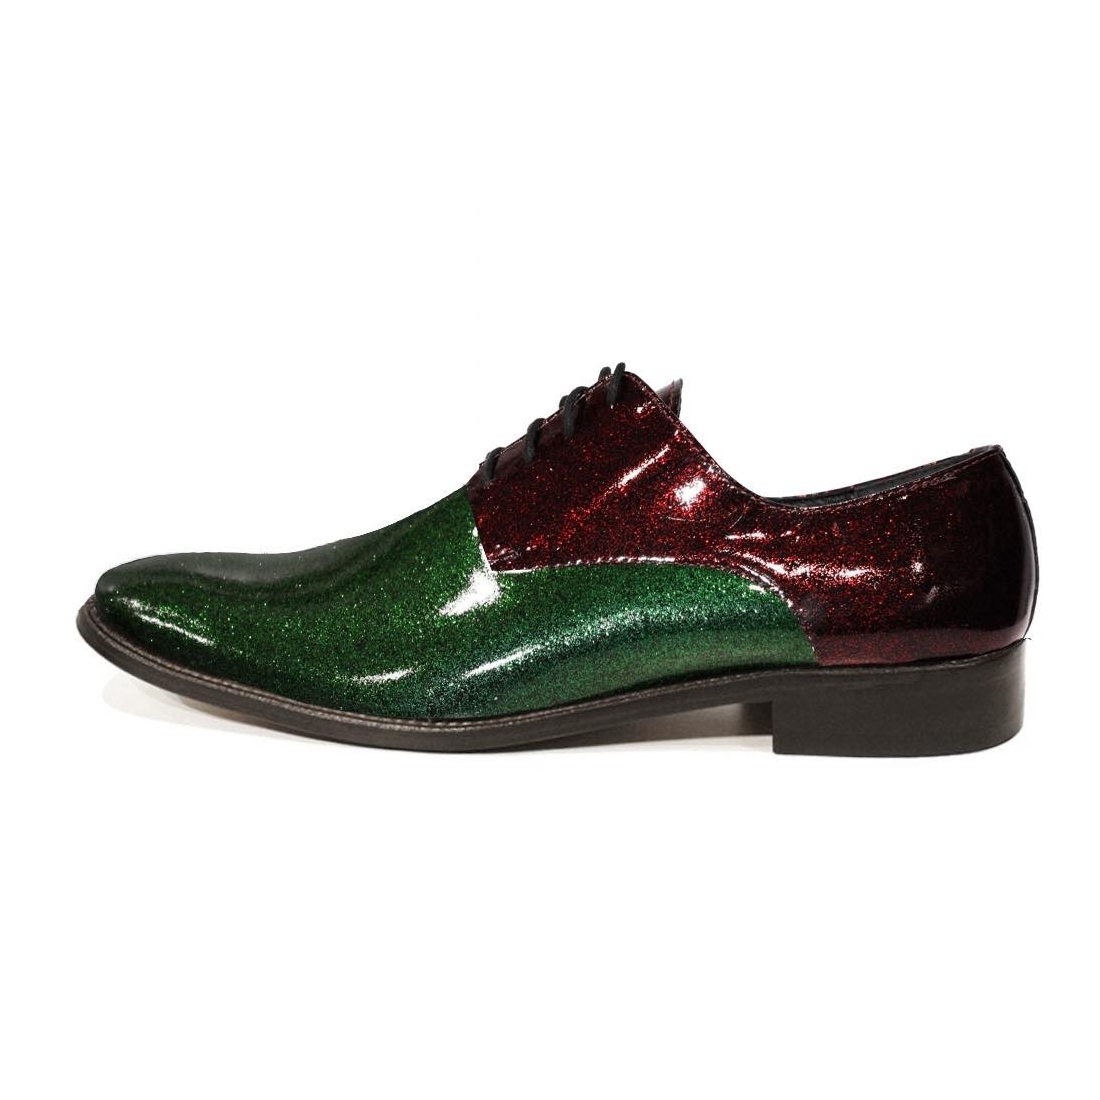 Modello Luccichio - Scarpe Classiche - Handmade Colorful Italian Leather Shoes